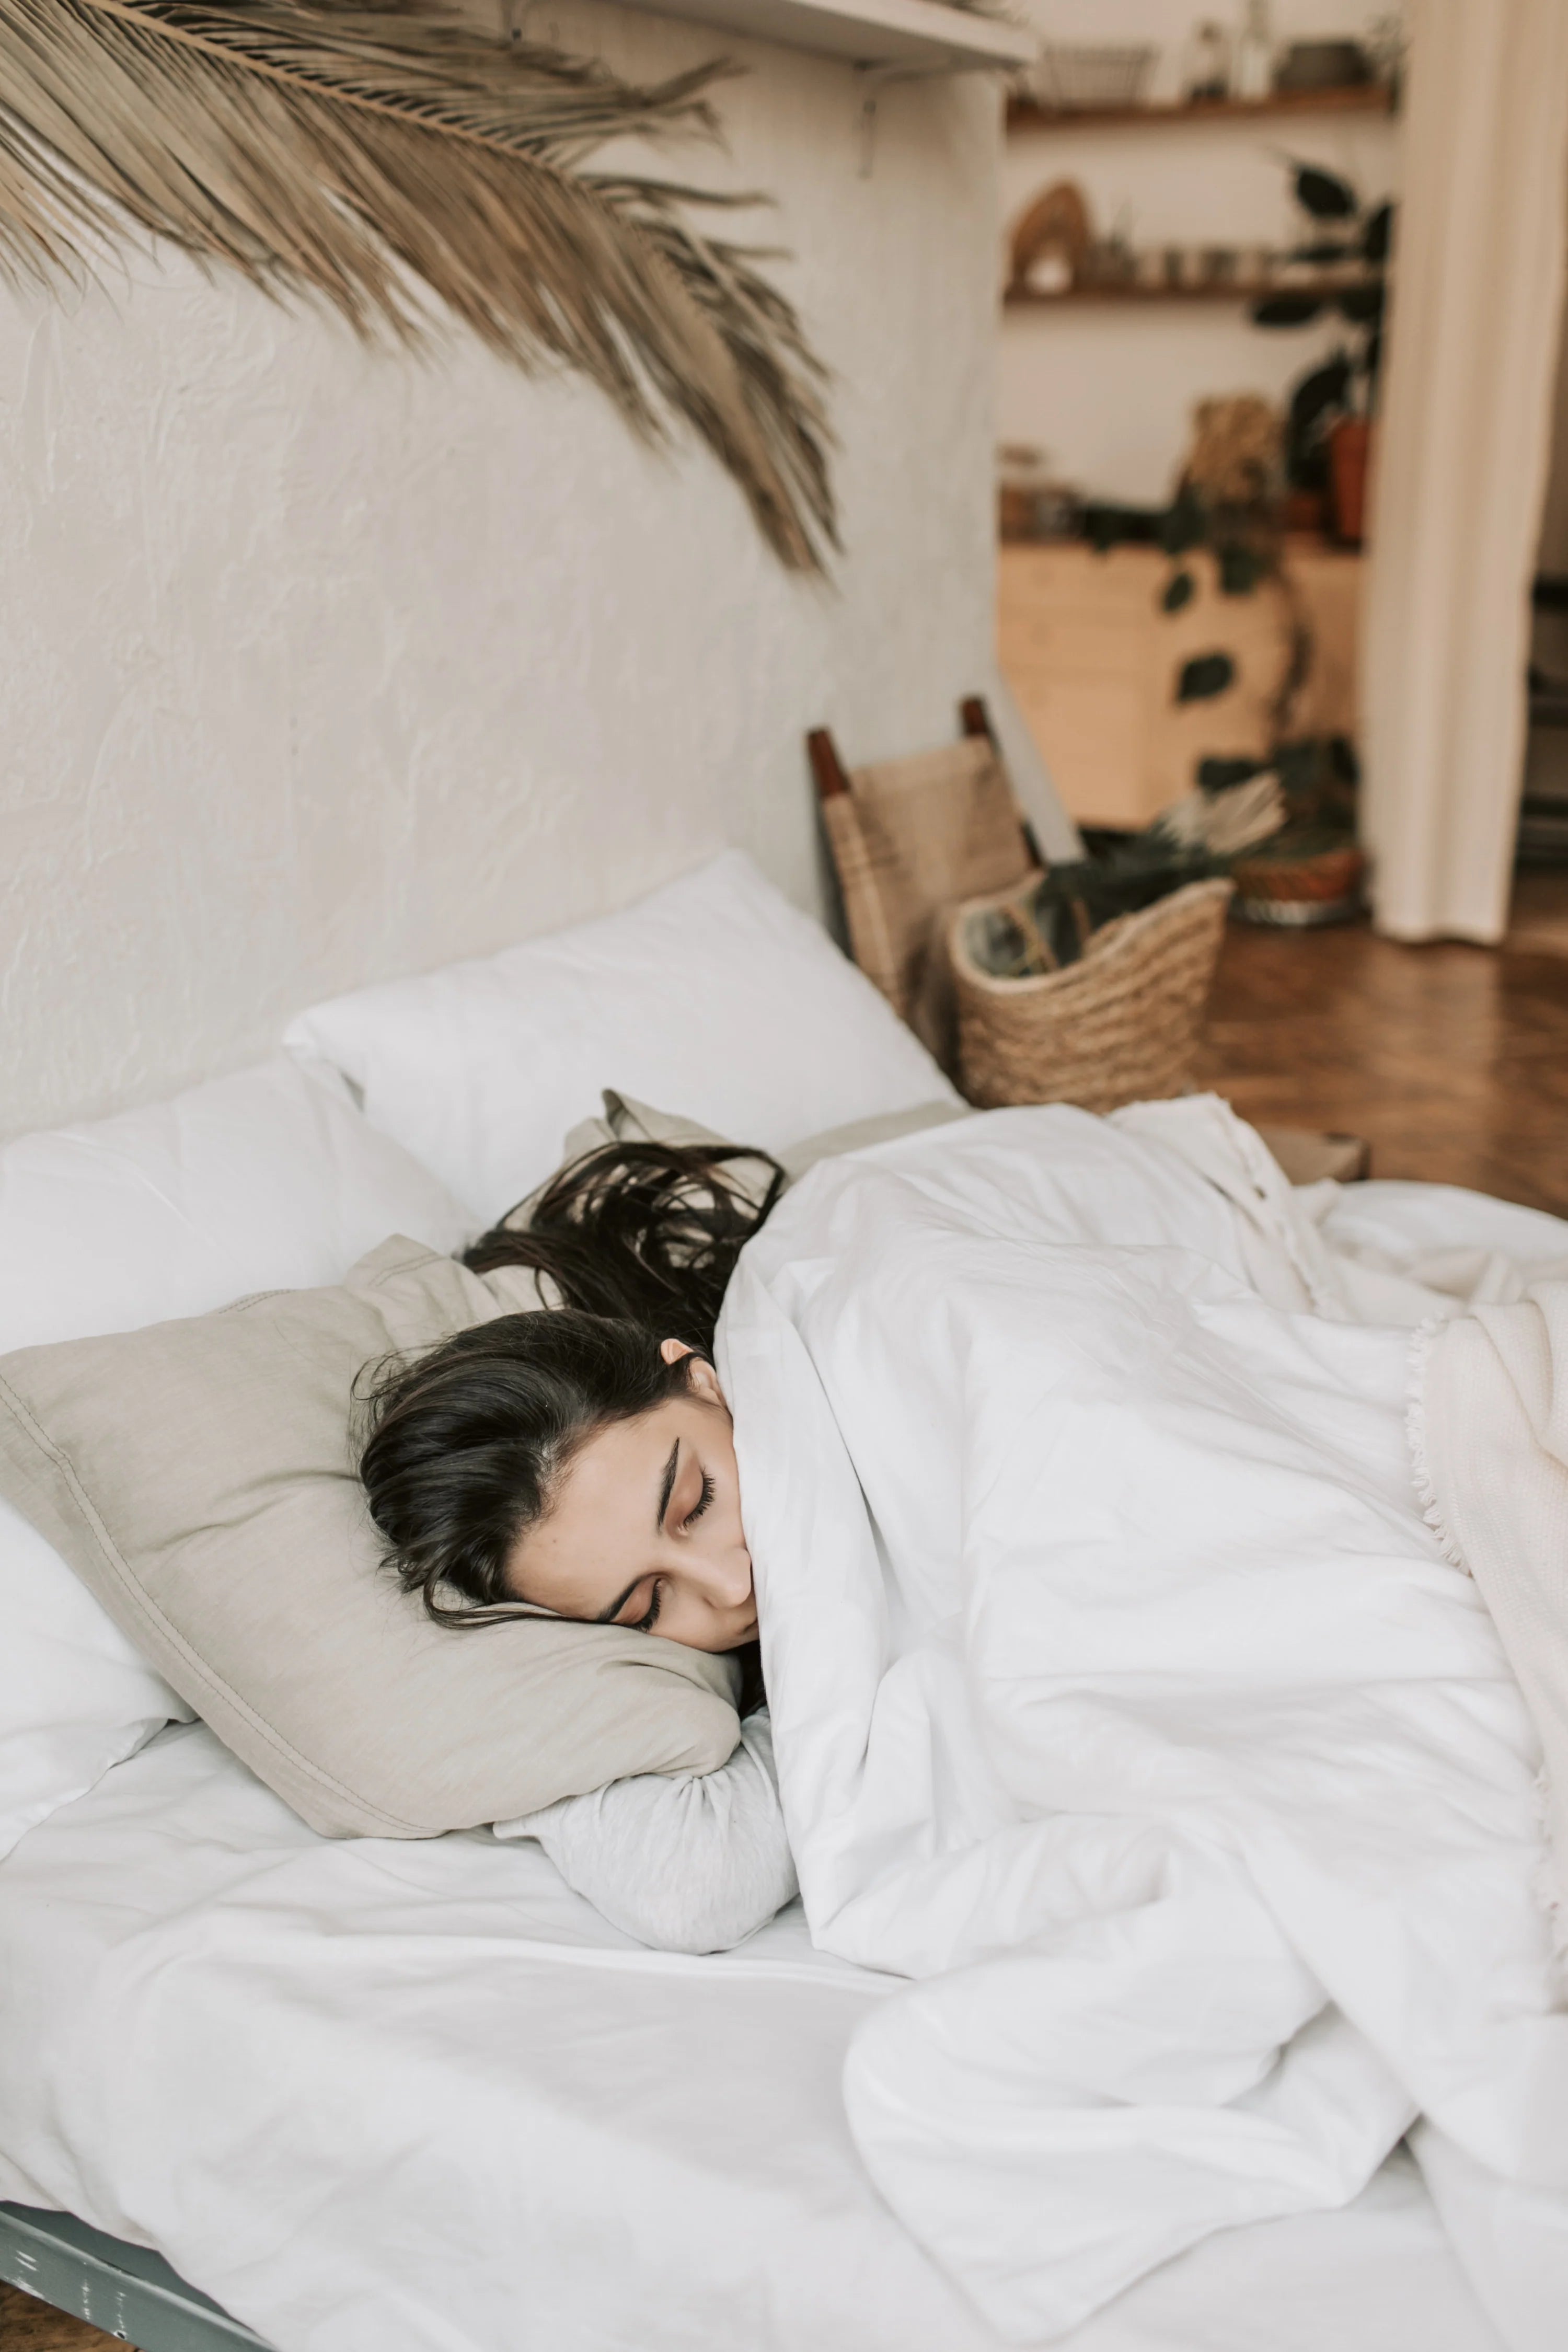 Does sleep impact longevity?